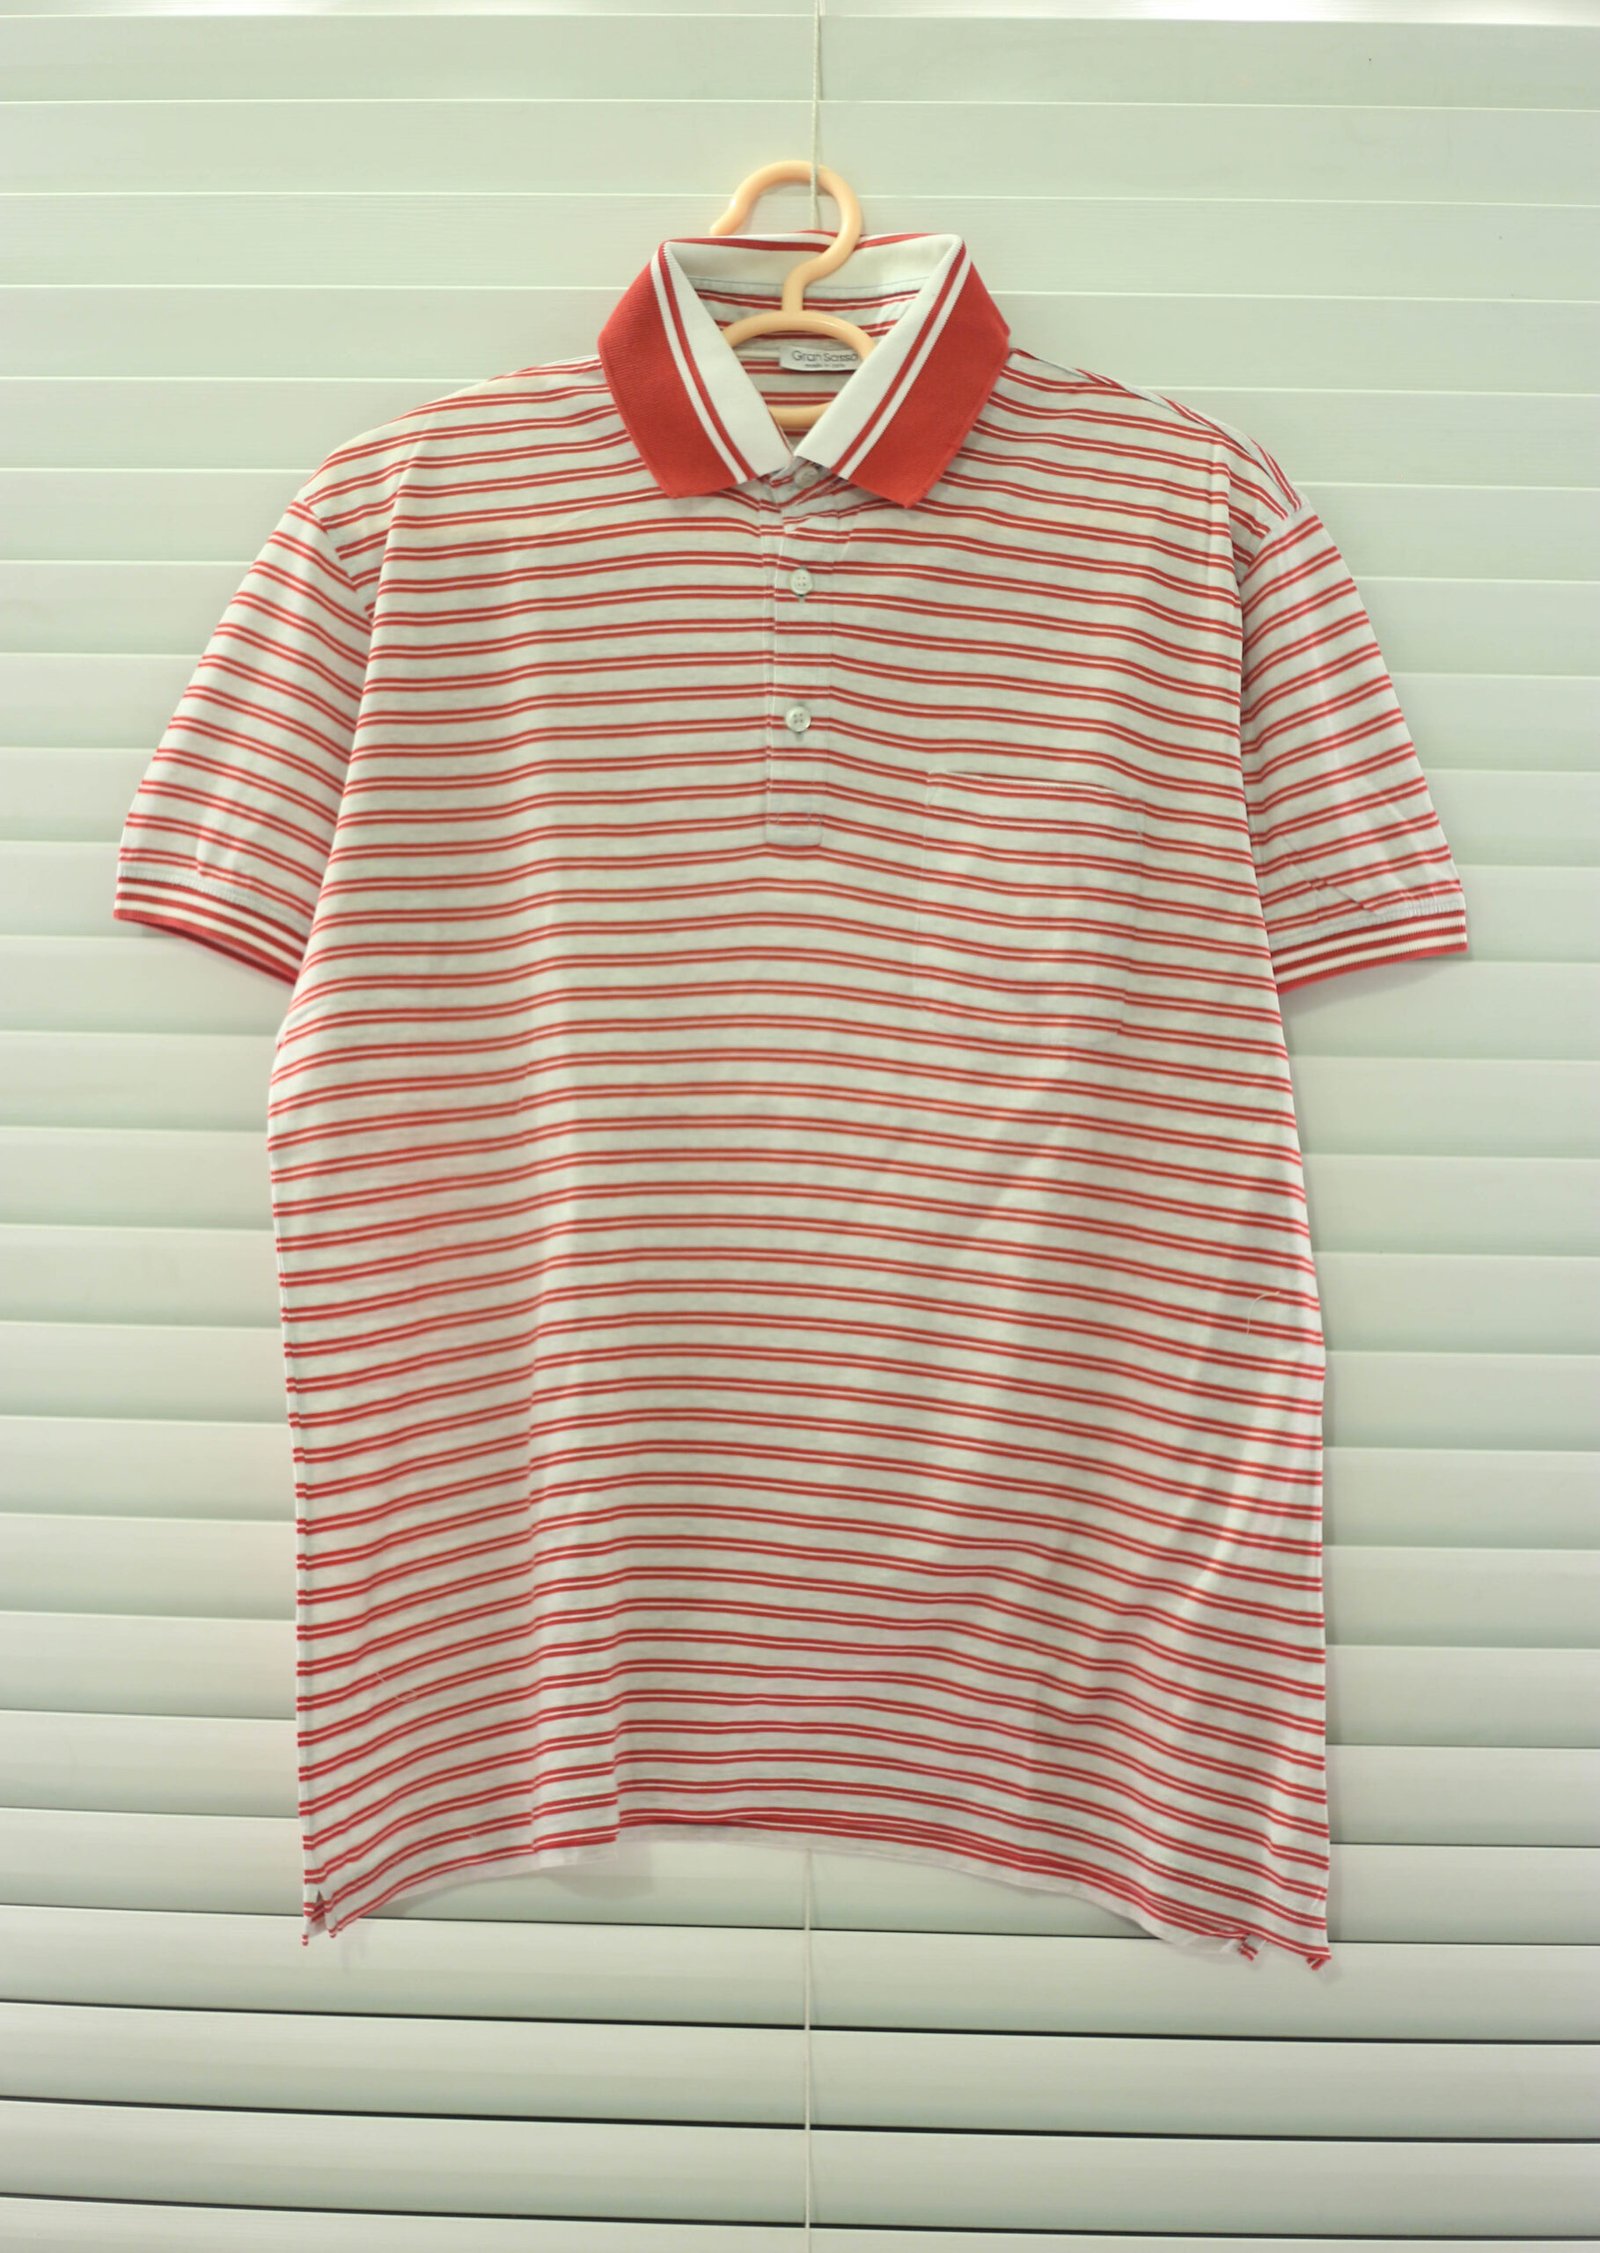 Lunda.Pk - Lining Red on White Polo T-Shirt | Large - Lunda.pk - Sasta ...